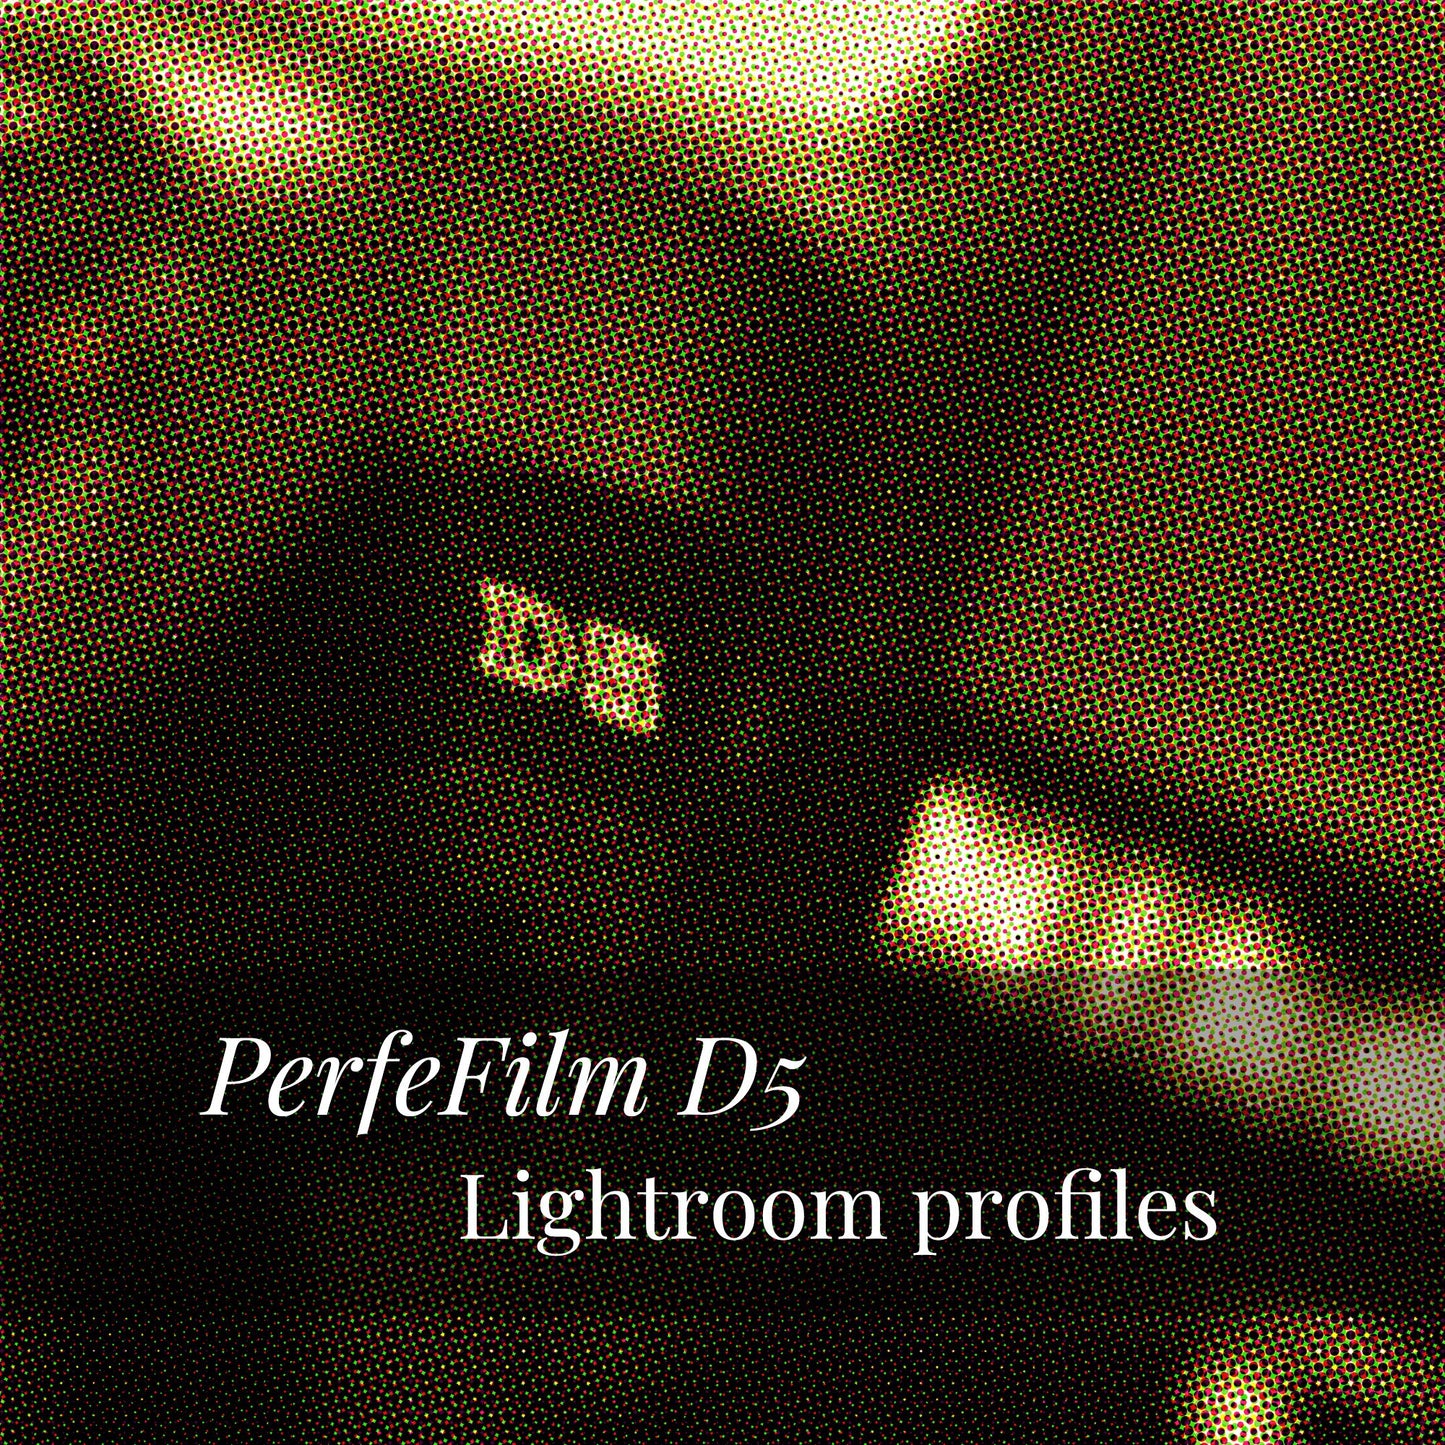 PerfeFilm D5 Lighroom 色彩配置文件, 单一相机授权。模拟 Nikon D5 色彩